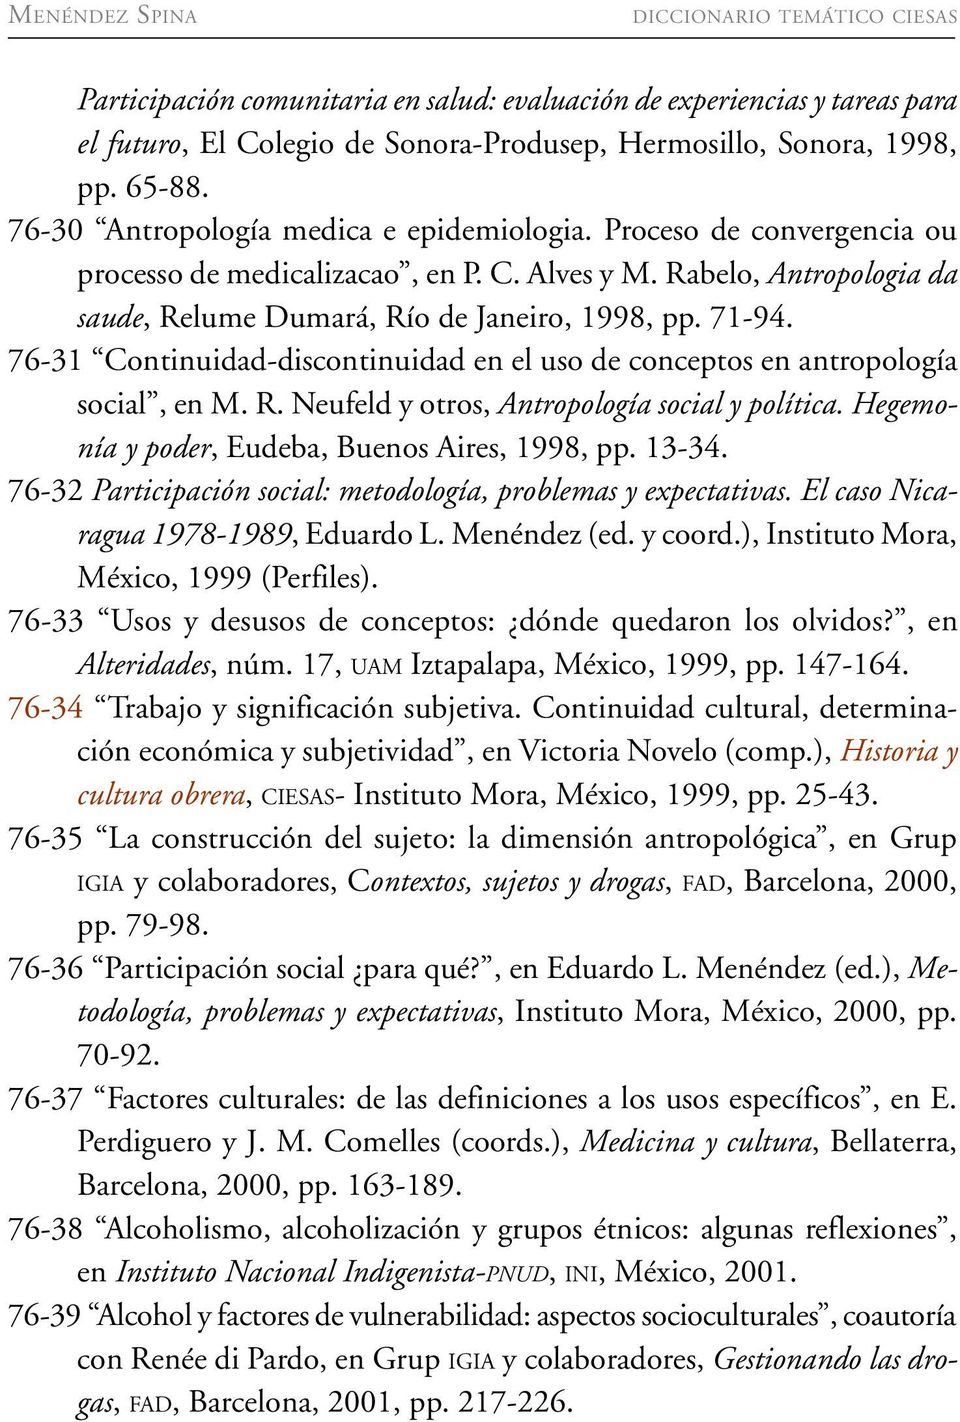 76-31 Continuidad-discontinuidad en el uso de conceptos en antropología social, en M. R. Neufeld y otros, Antropología social y política. Hegemonía y poder, Eudeba, Buenos Aires, 1998, pp. 13-34.